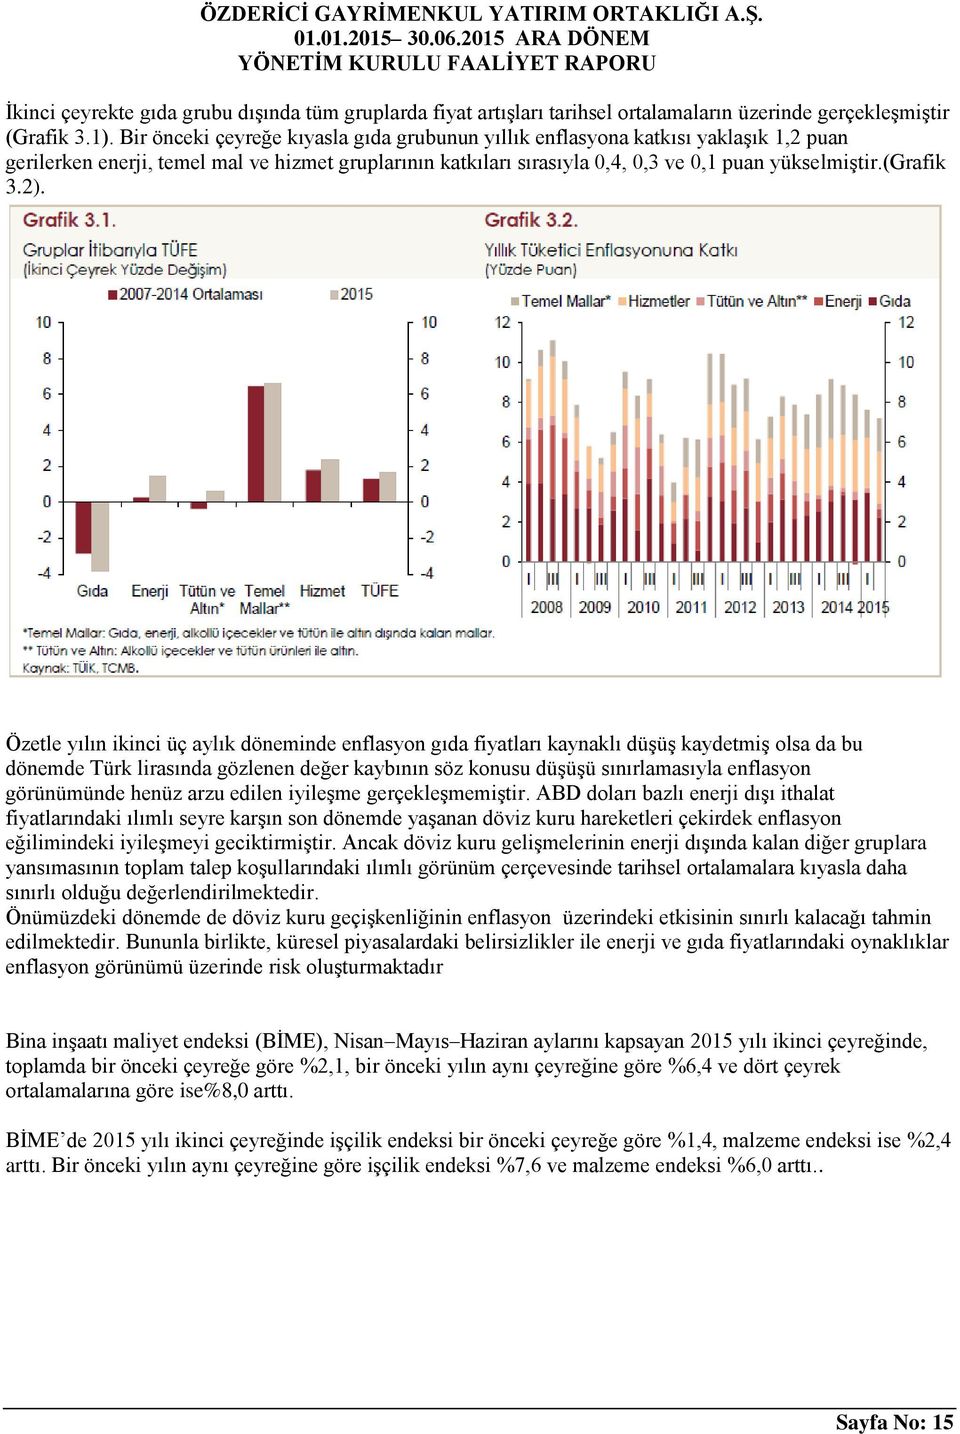 2). Özetle yılın ikinci üç aylık döneminde enflasyon gıda fiyatları kaynaklı düşüş kaydetmiş olsa da bu dönemde Türk lirasında gözlenen değer kaybının söz konusu düşüşü sınırlamasıyla enflasyon